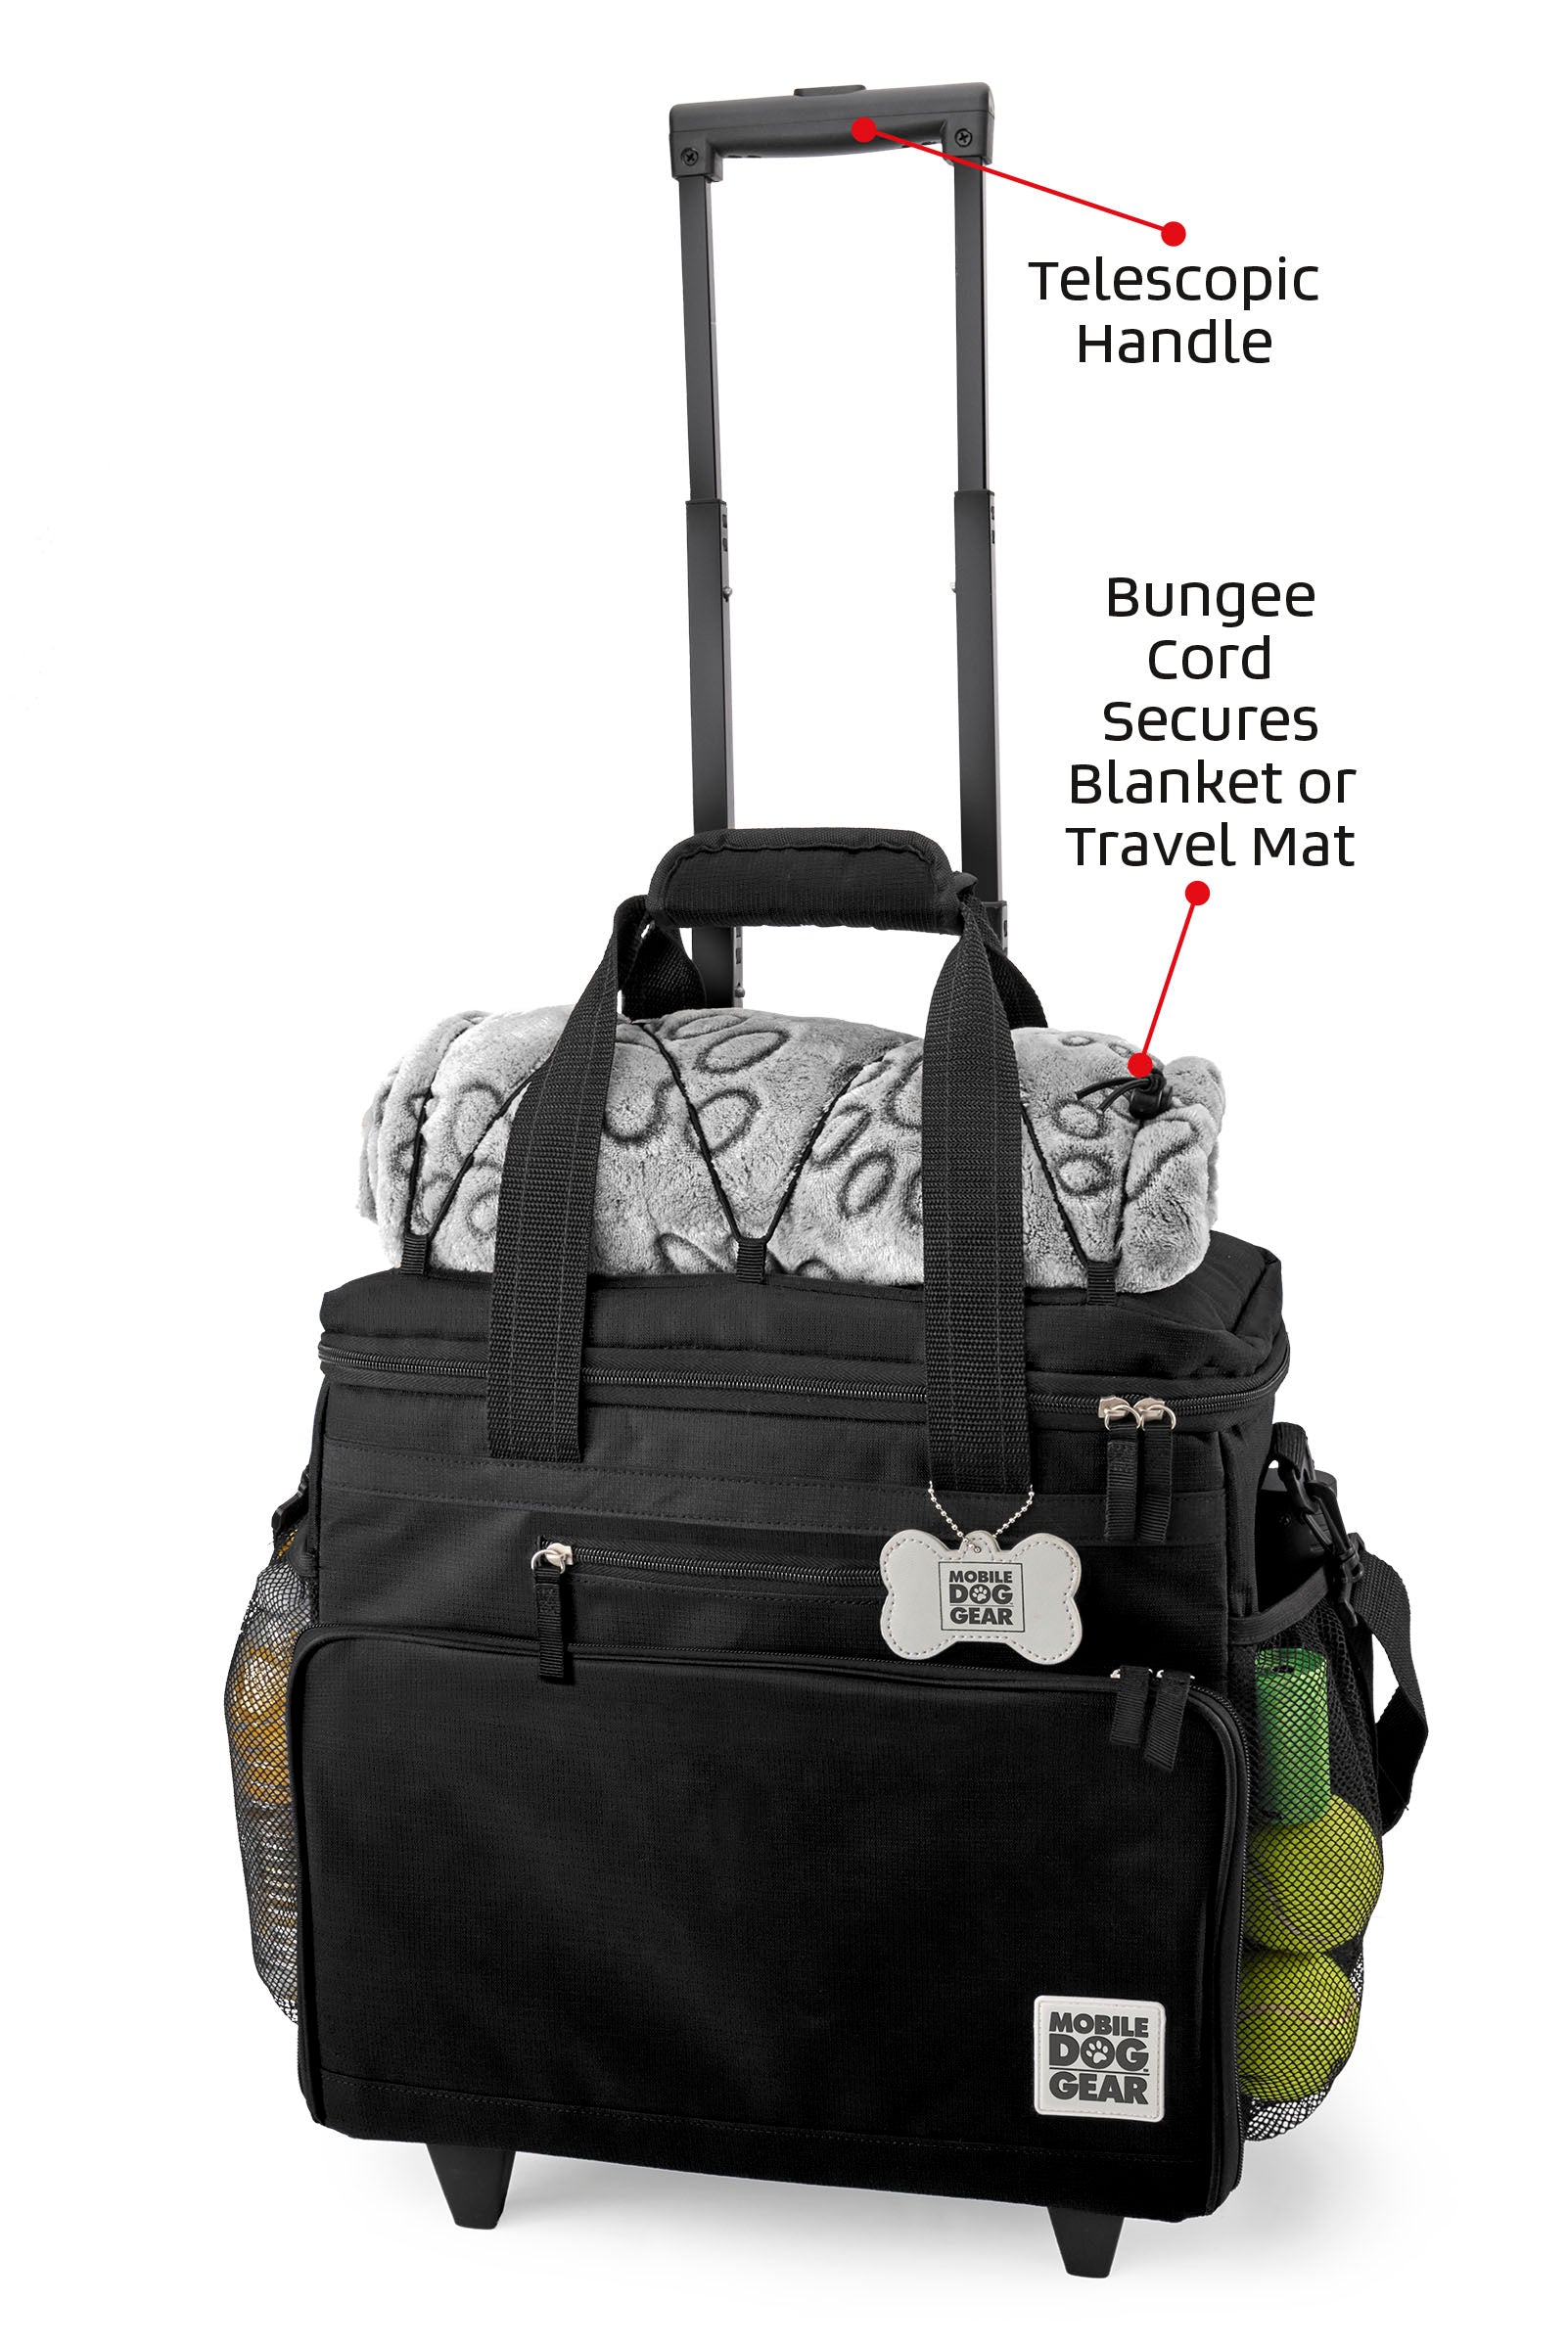 Bundle: ODG Day/Night Walking Bag (Black), ODG Rolling Week Away Bag